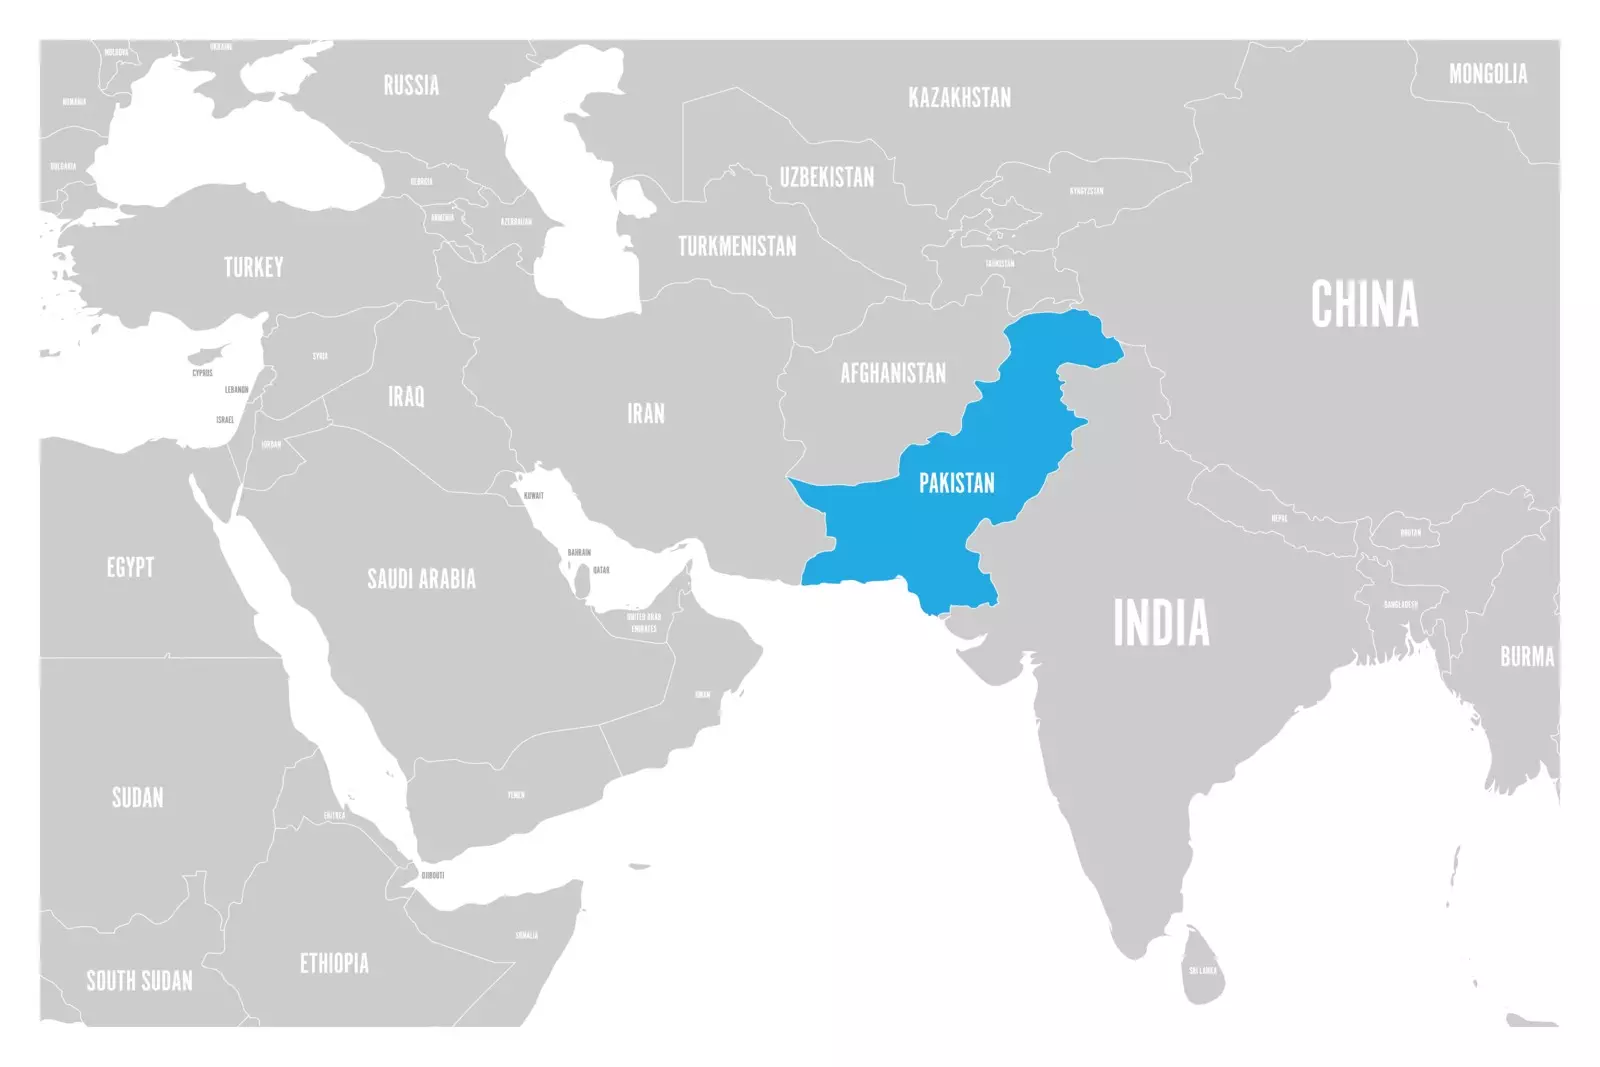 Pakistan ist auf der Karte blau hervorgehoben.